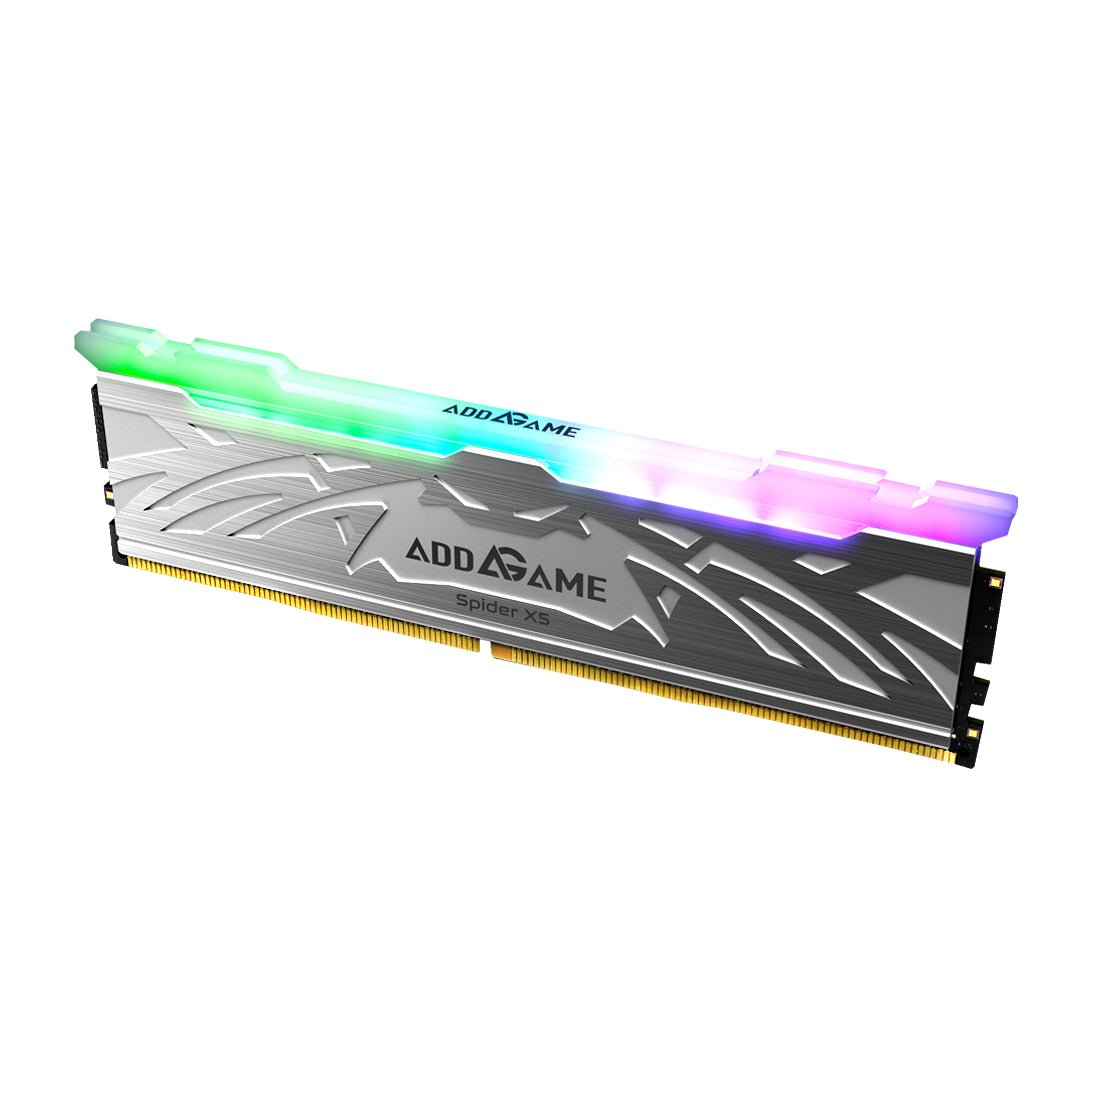 Kit mémoire DDR4 - ADDGAME Spider X4 16Go (2x 8Go) 3600Mhz CL18 RGB